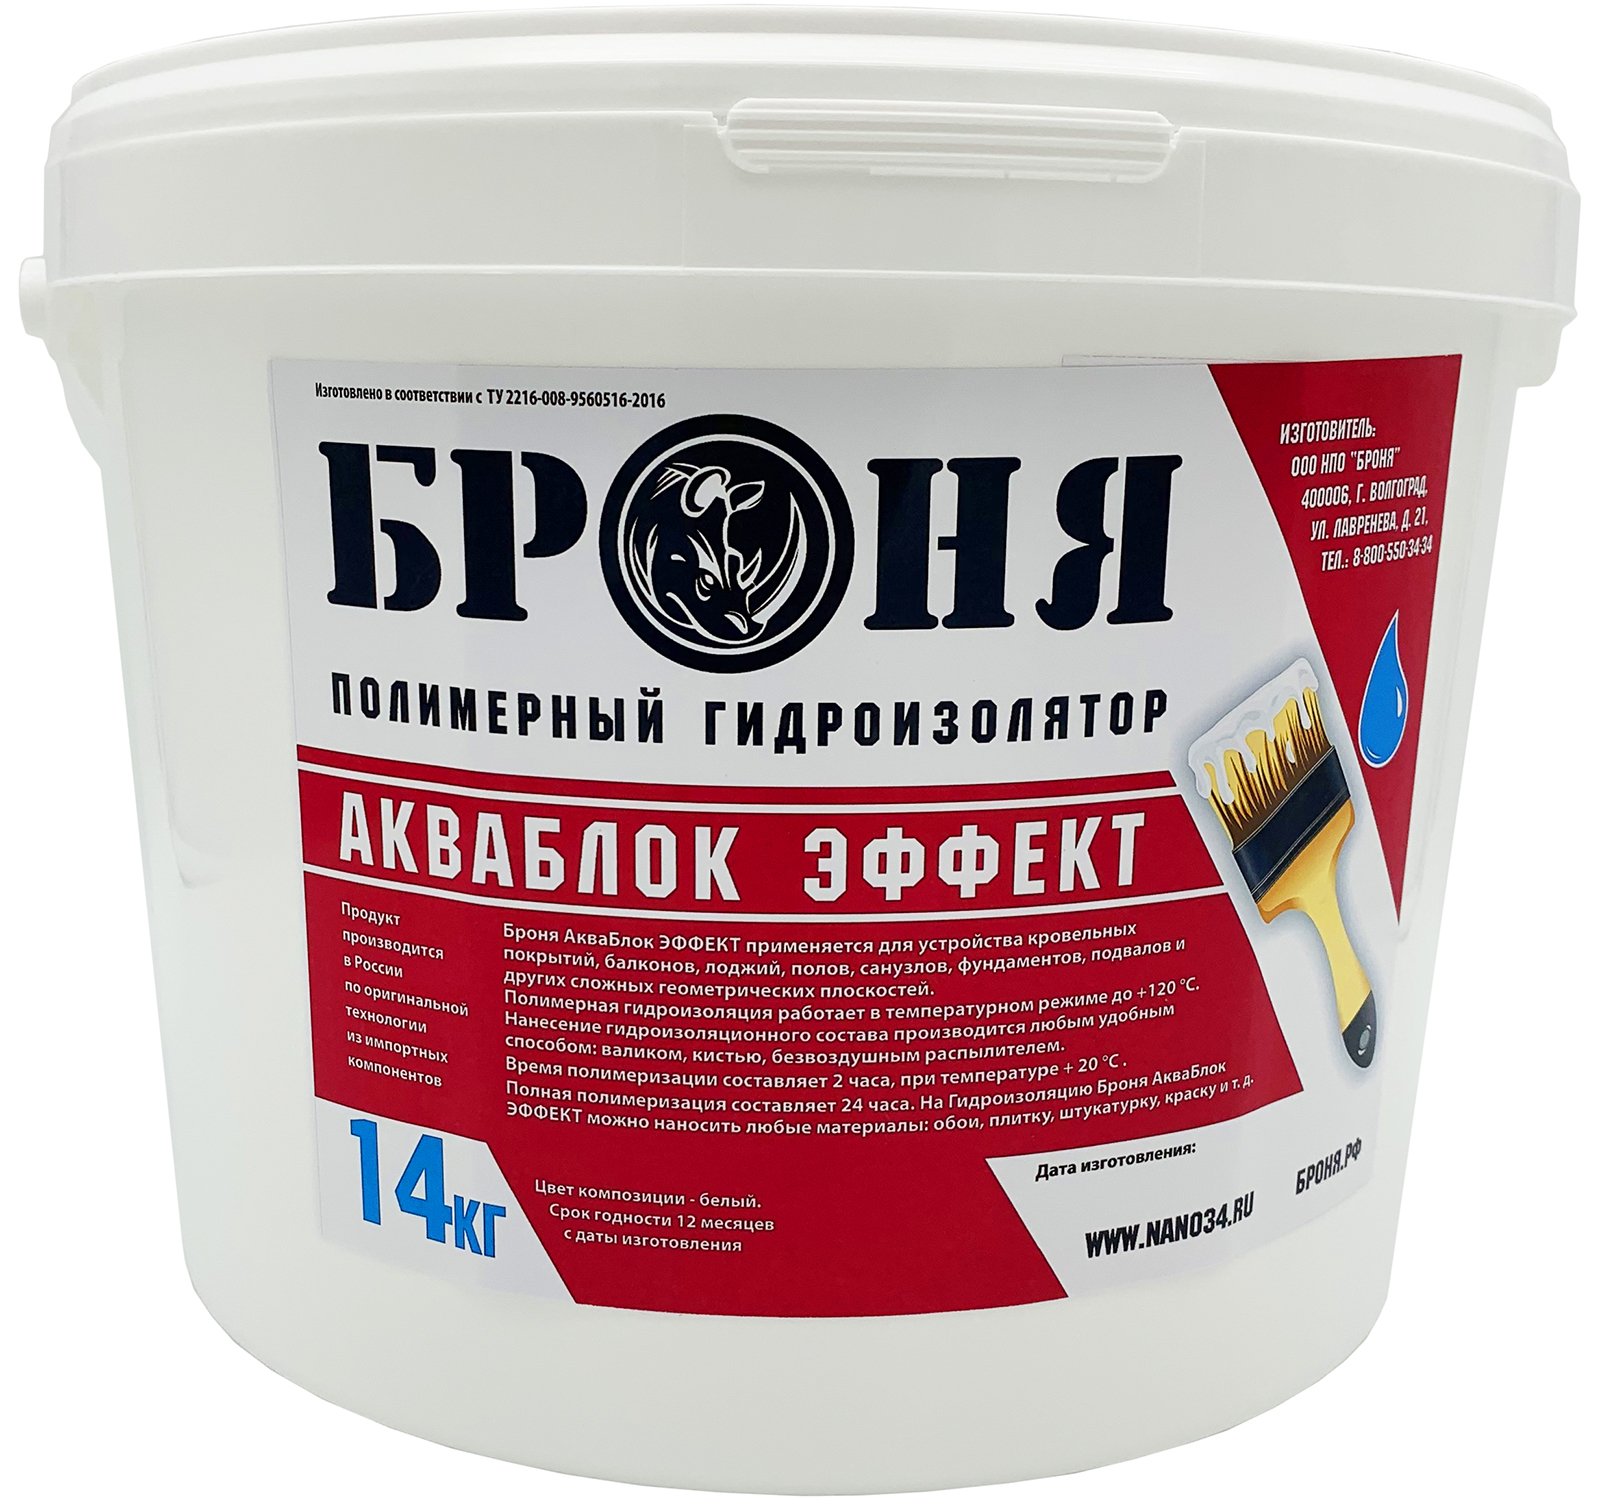 Жидкая резина для гидроизоляции кровли — купить в Москве| Хавег